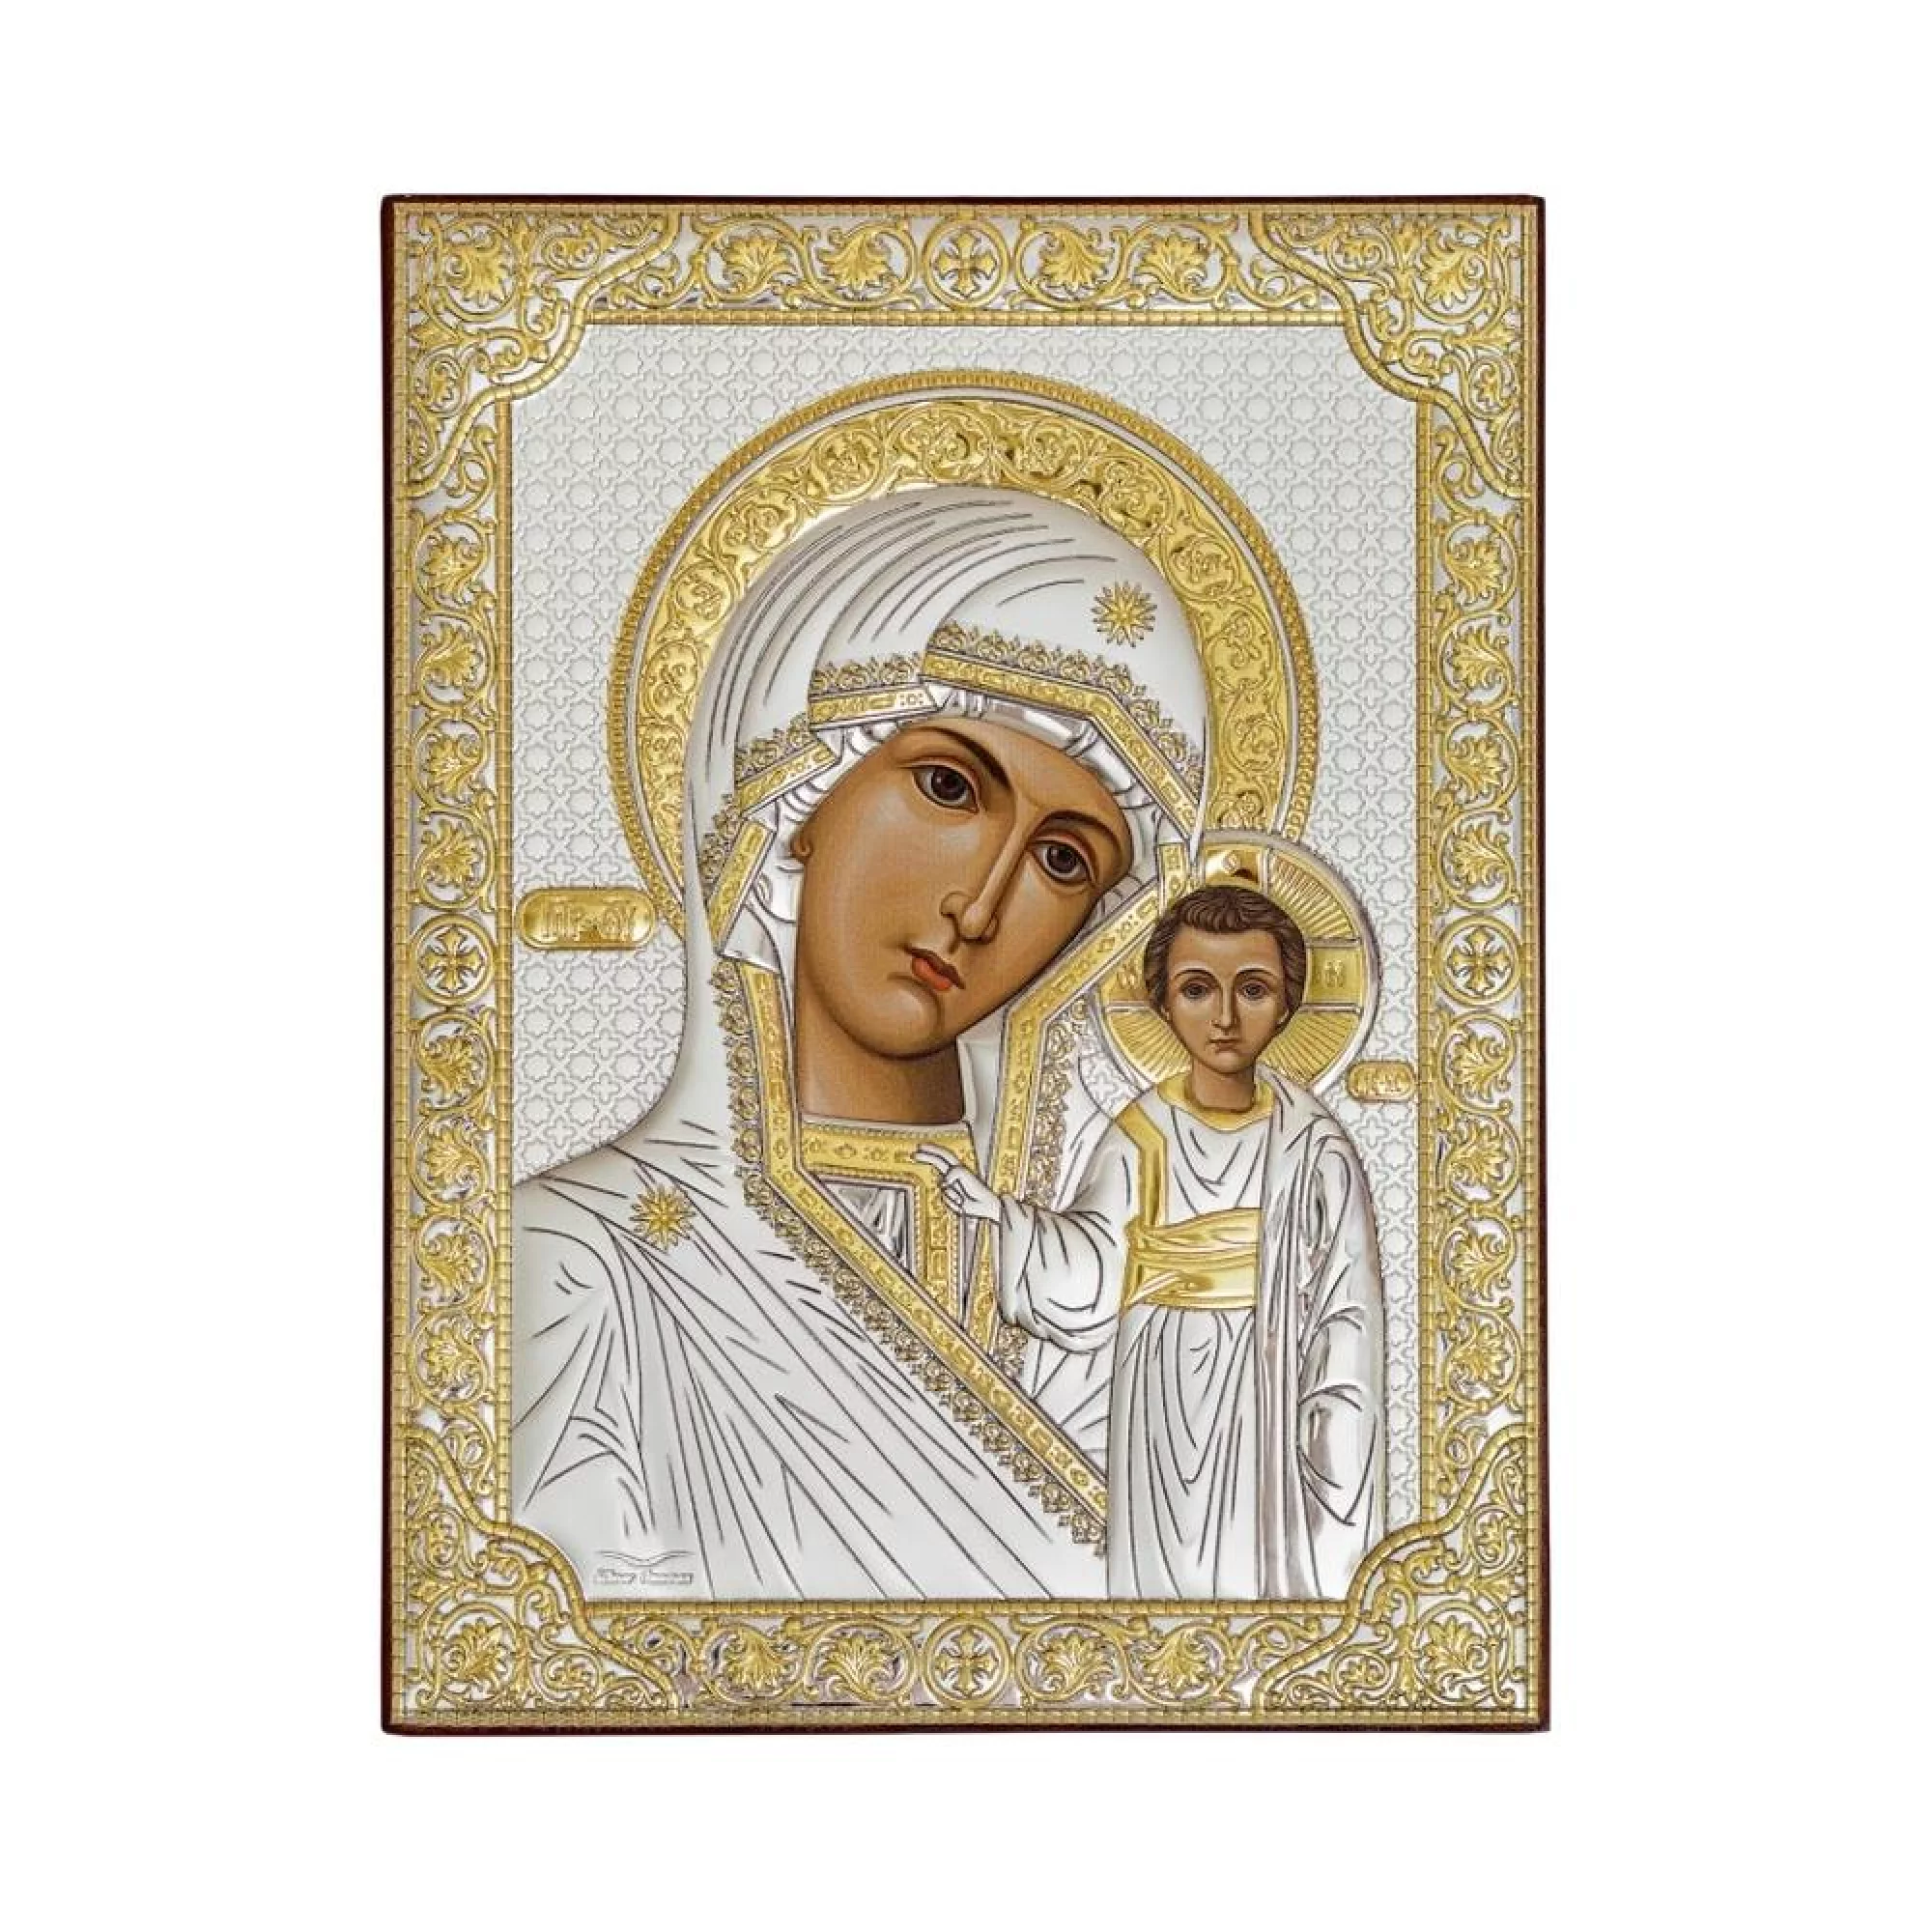 Икона из серебра Божья Матерь "Казанская" 120х160 мм - 1341438 – изображение 1